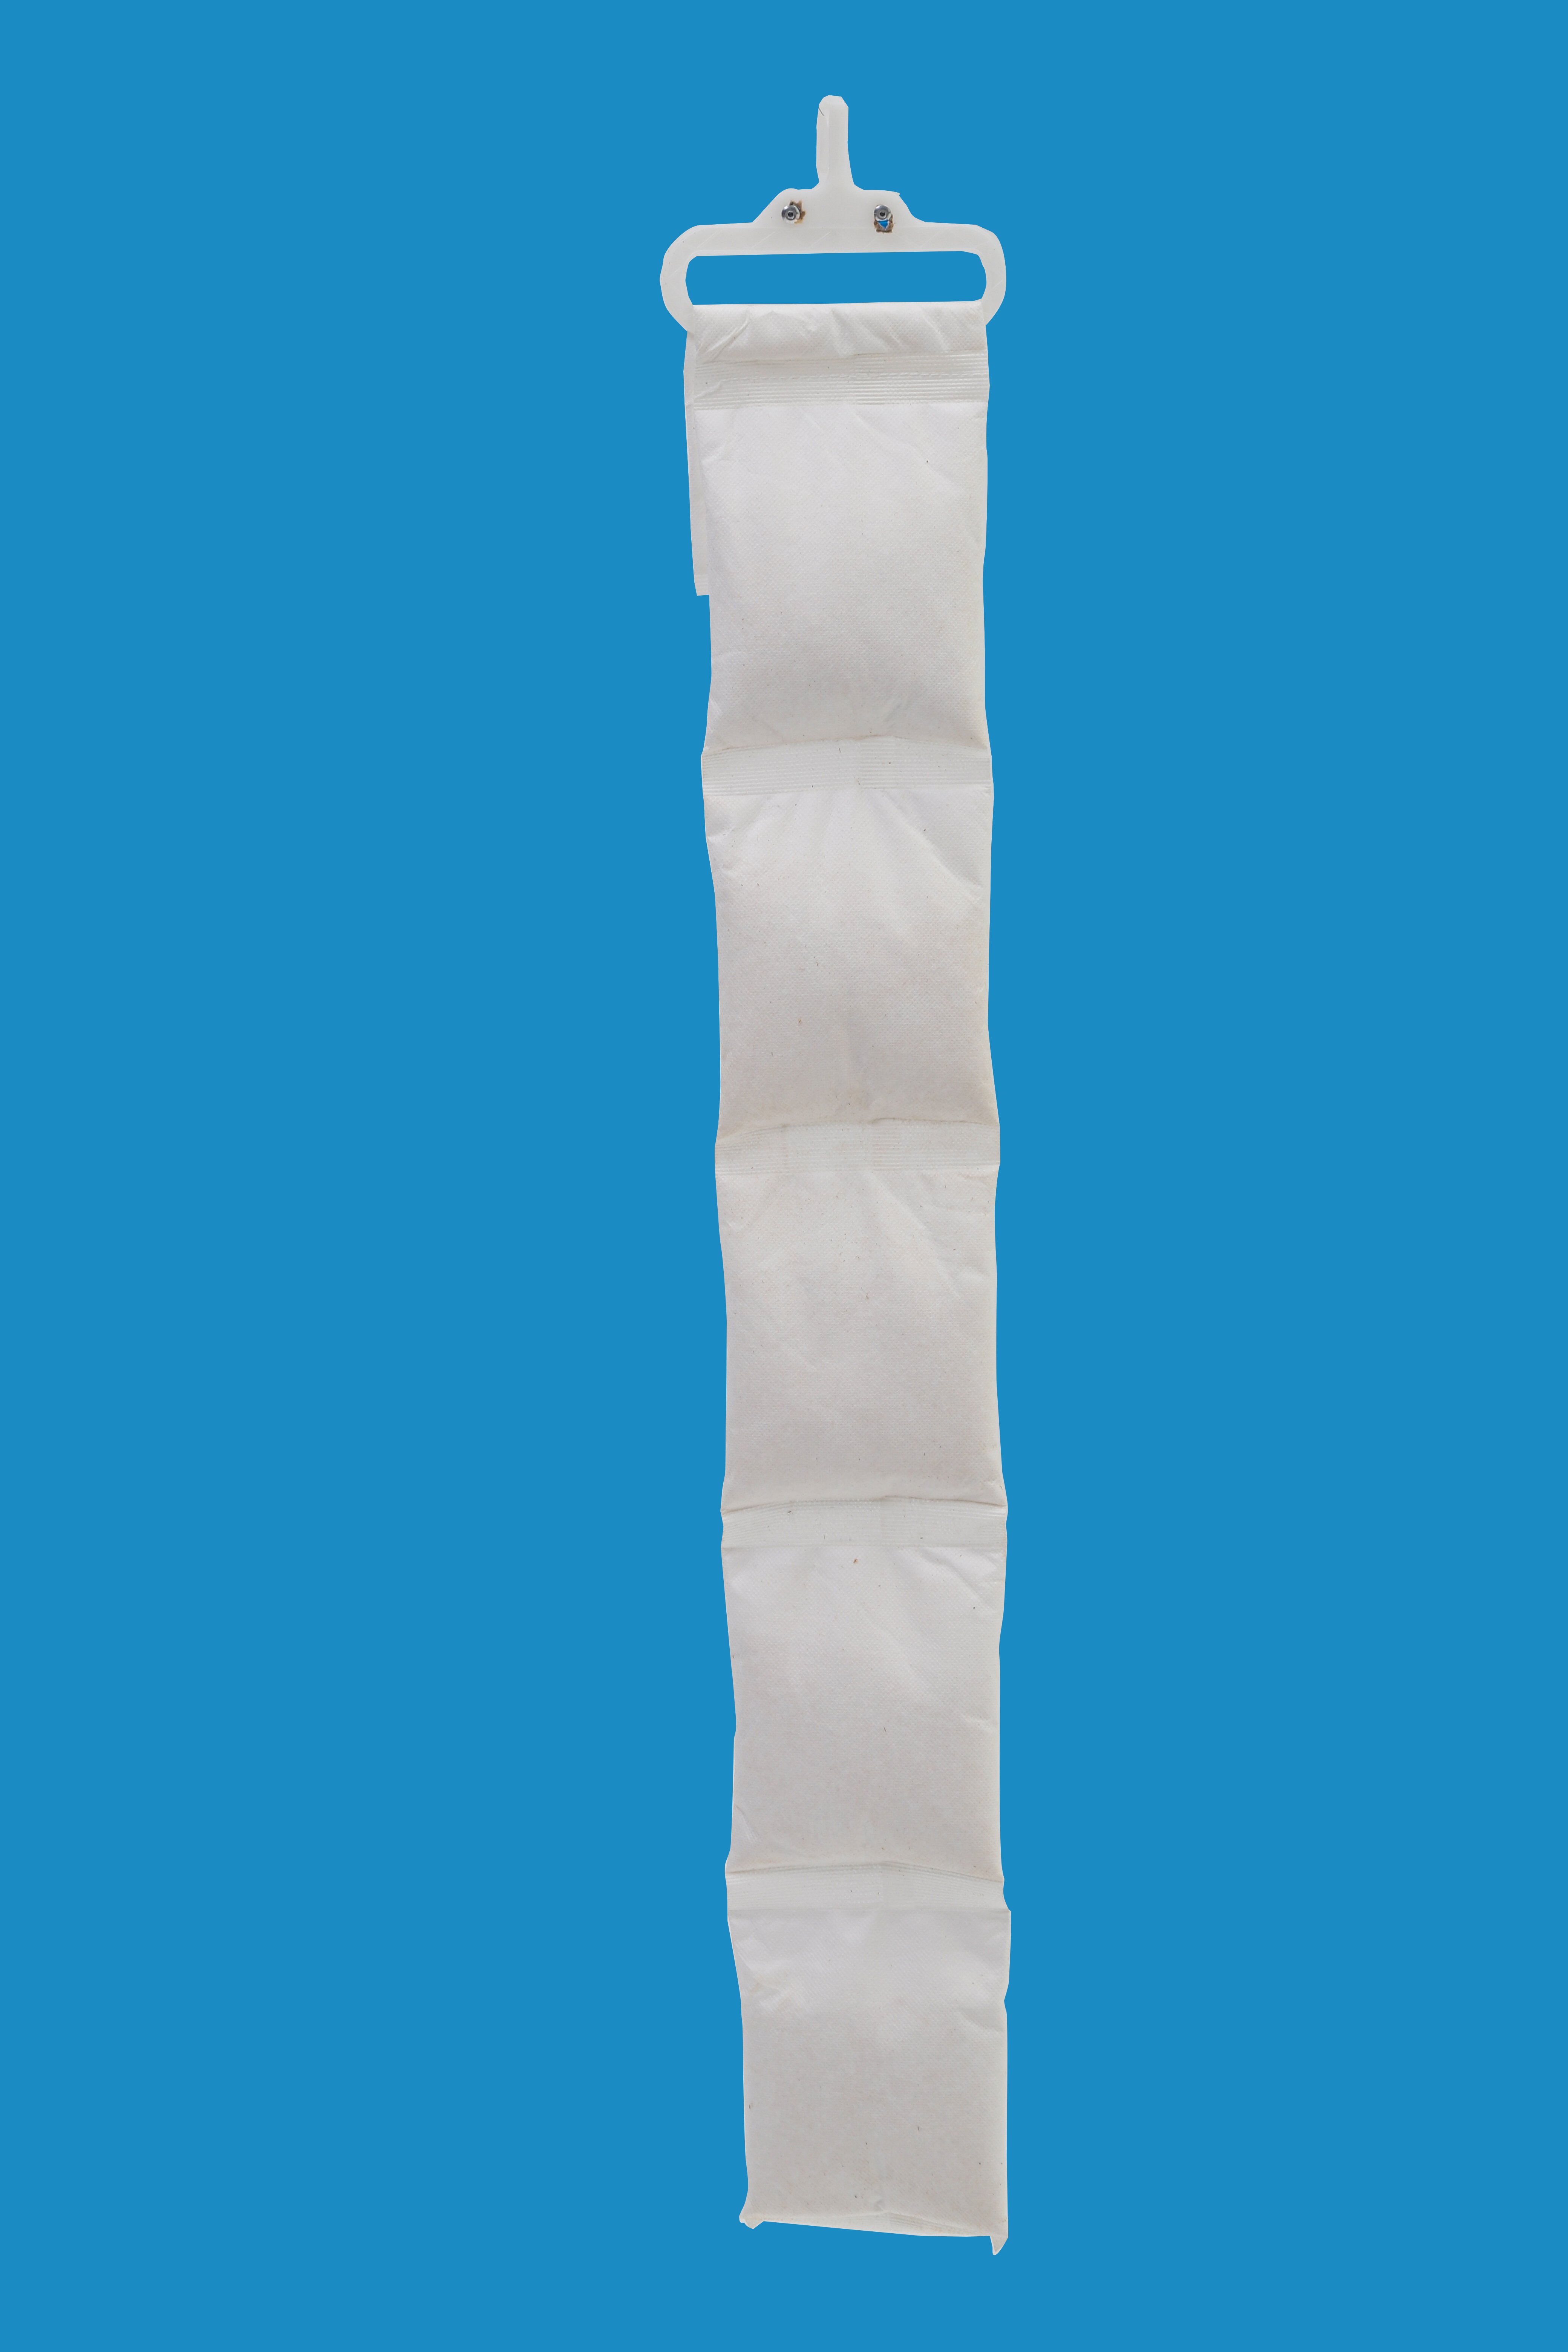 贝斯特干燥棒纸制品抗氧化便携设计